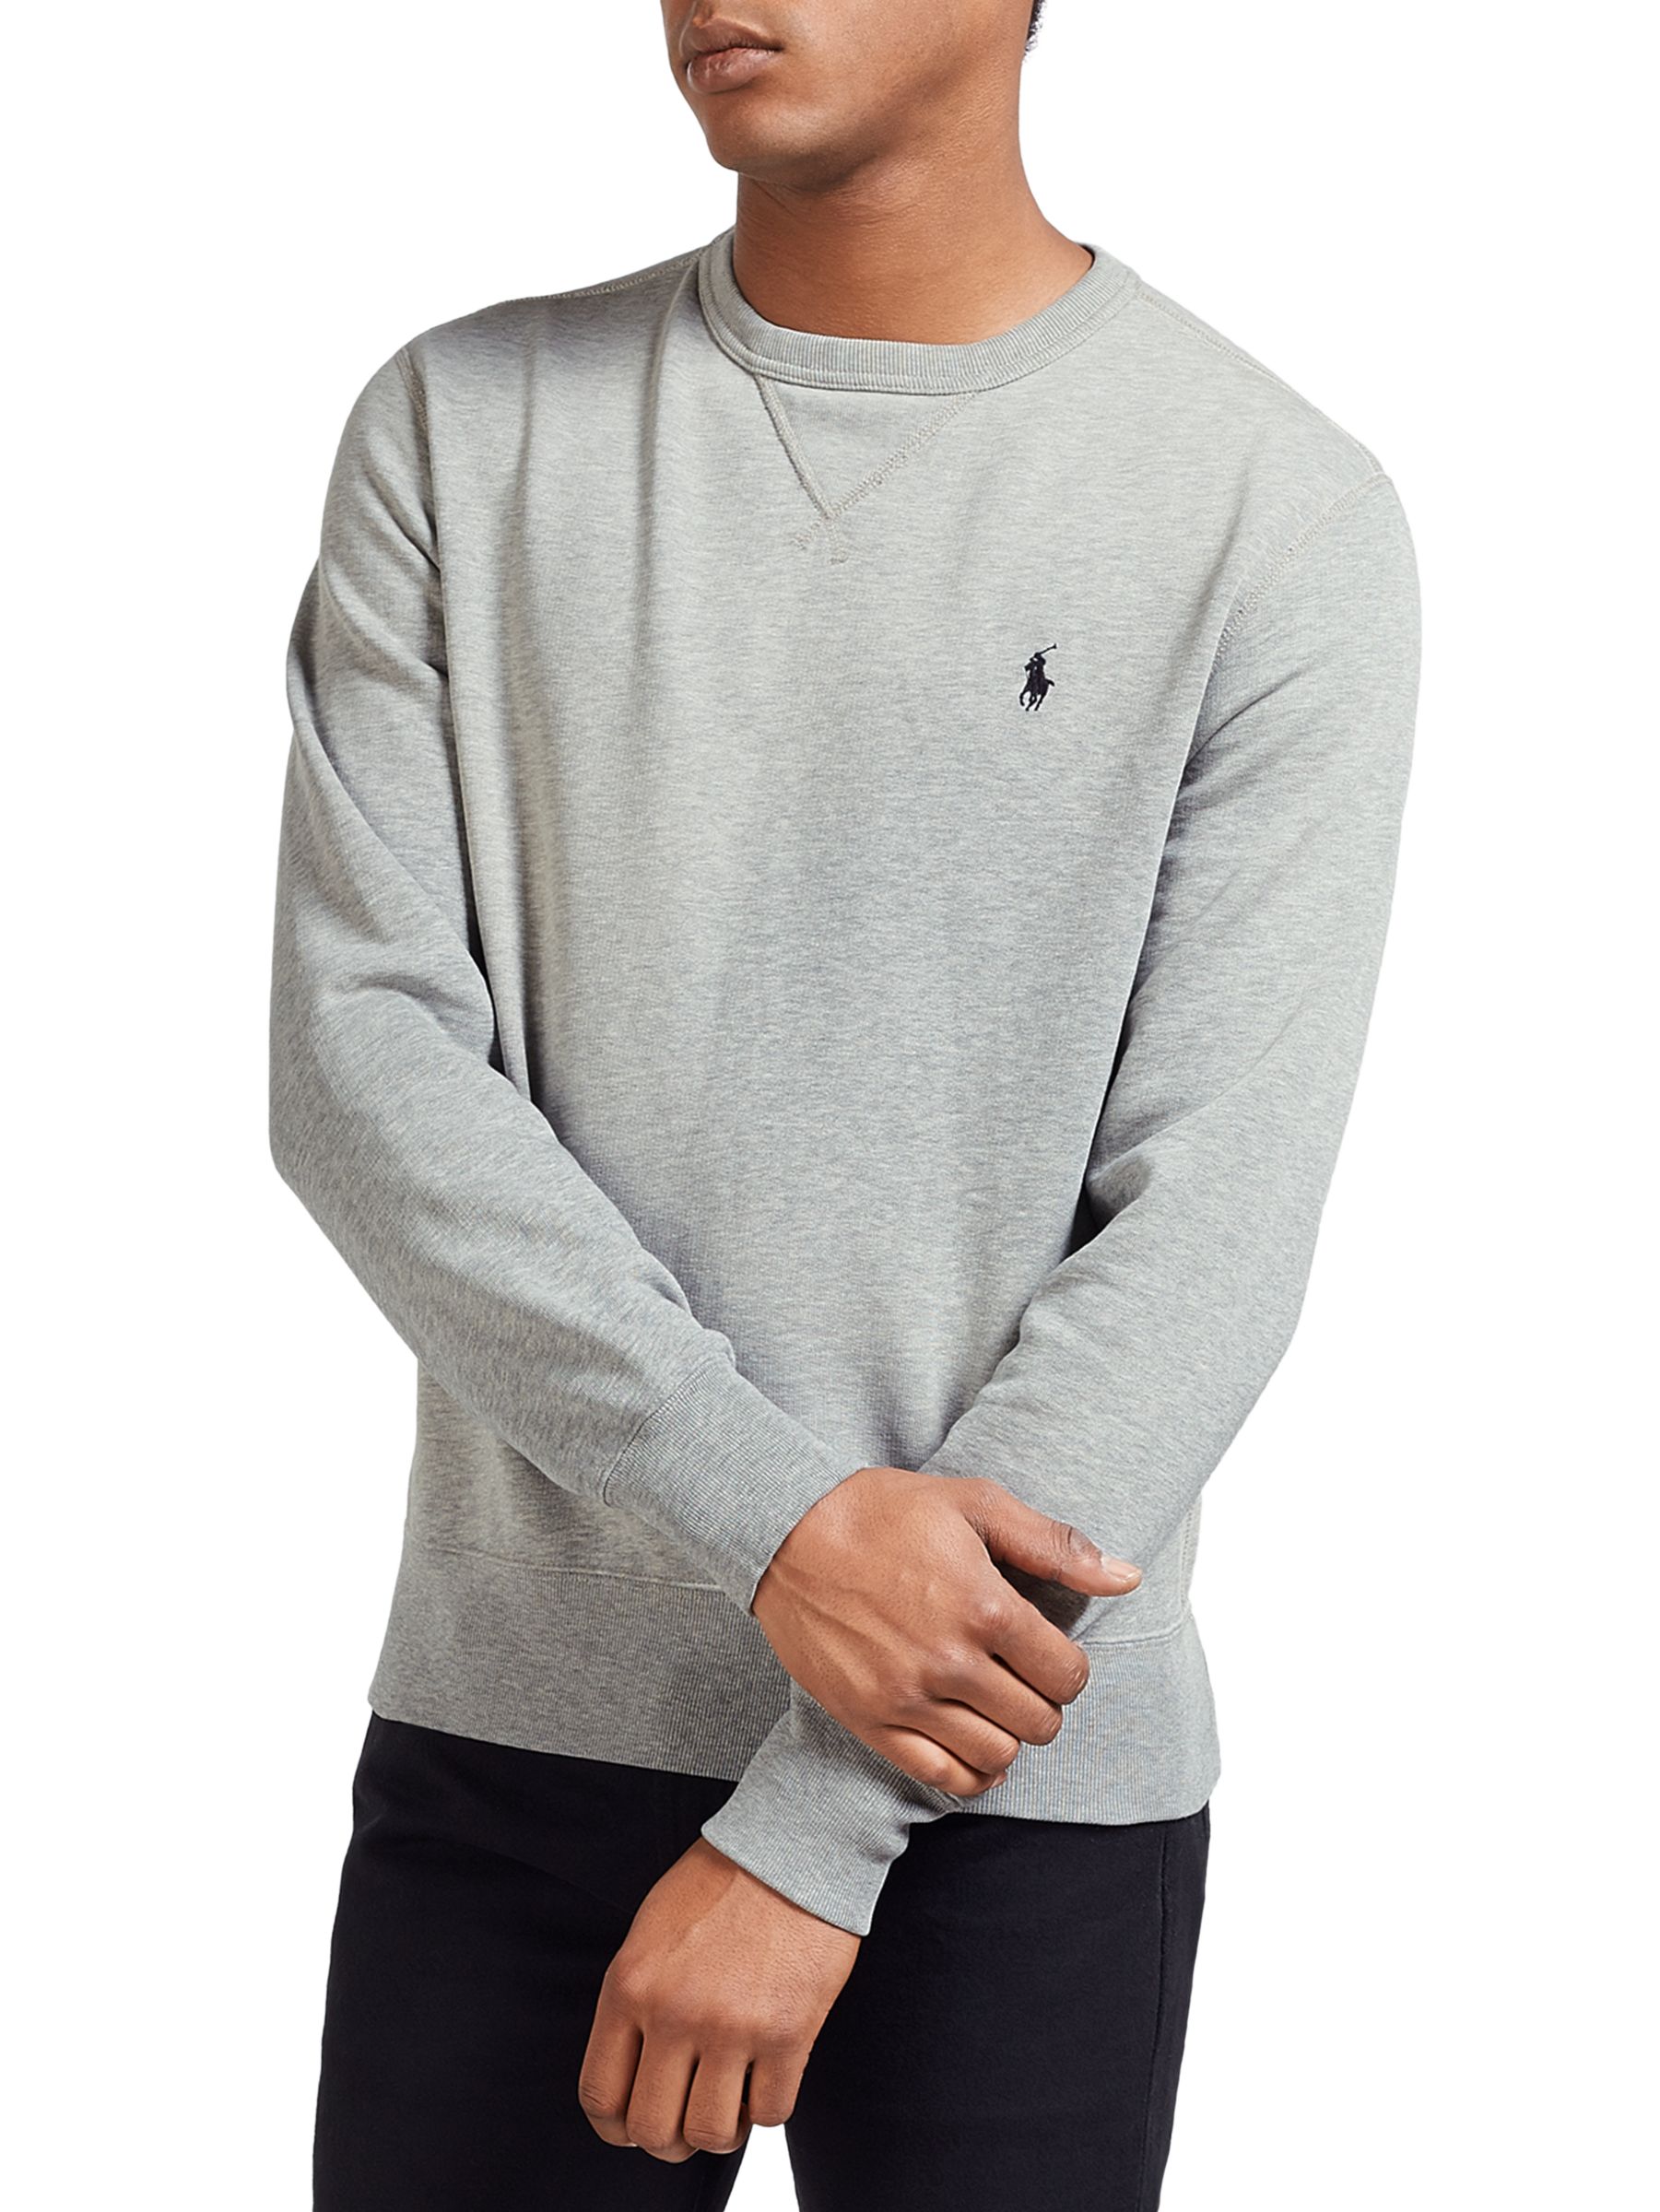 grey polo ralph lauren sweatshirt